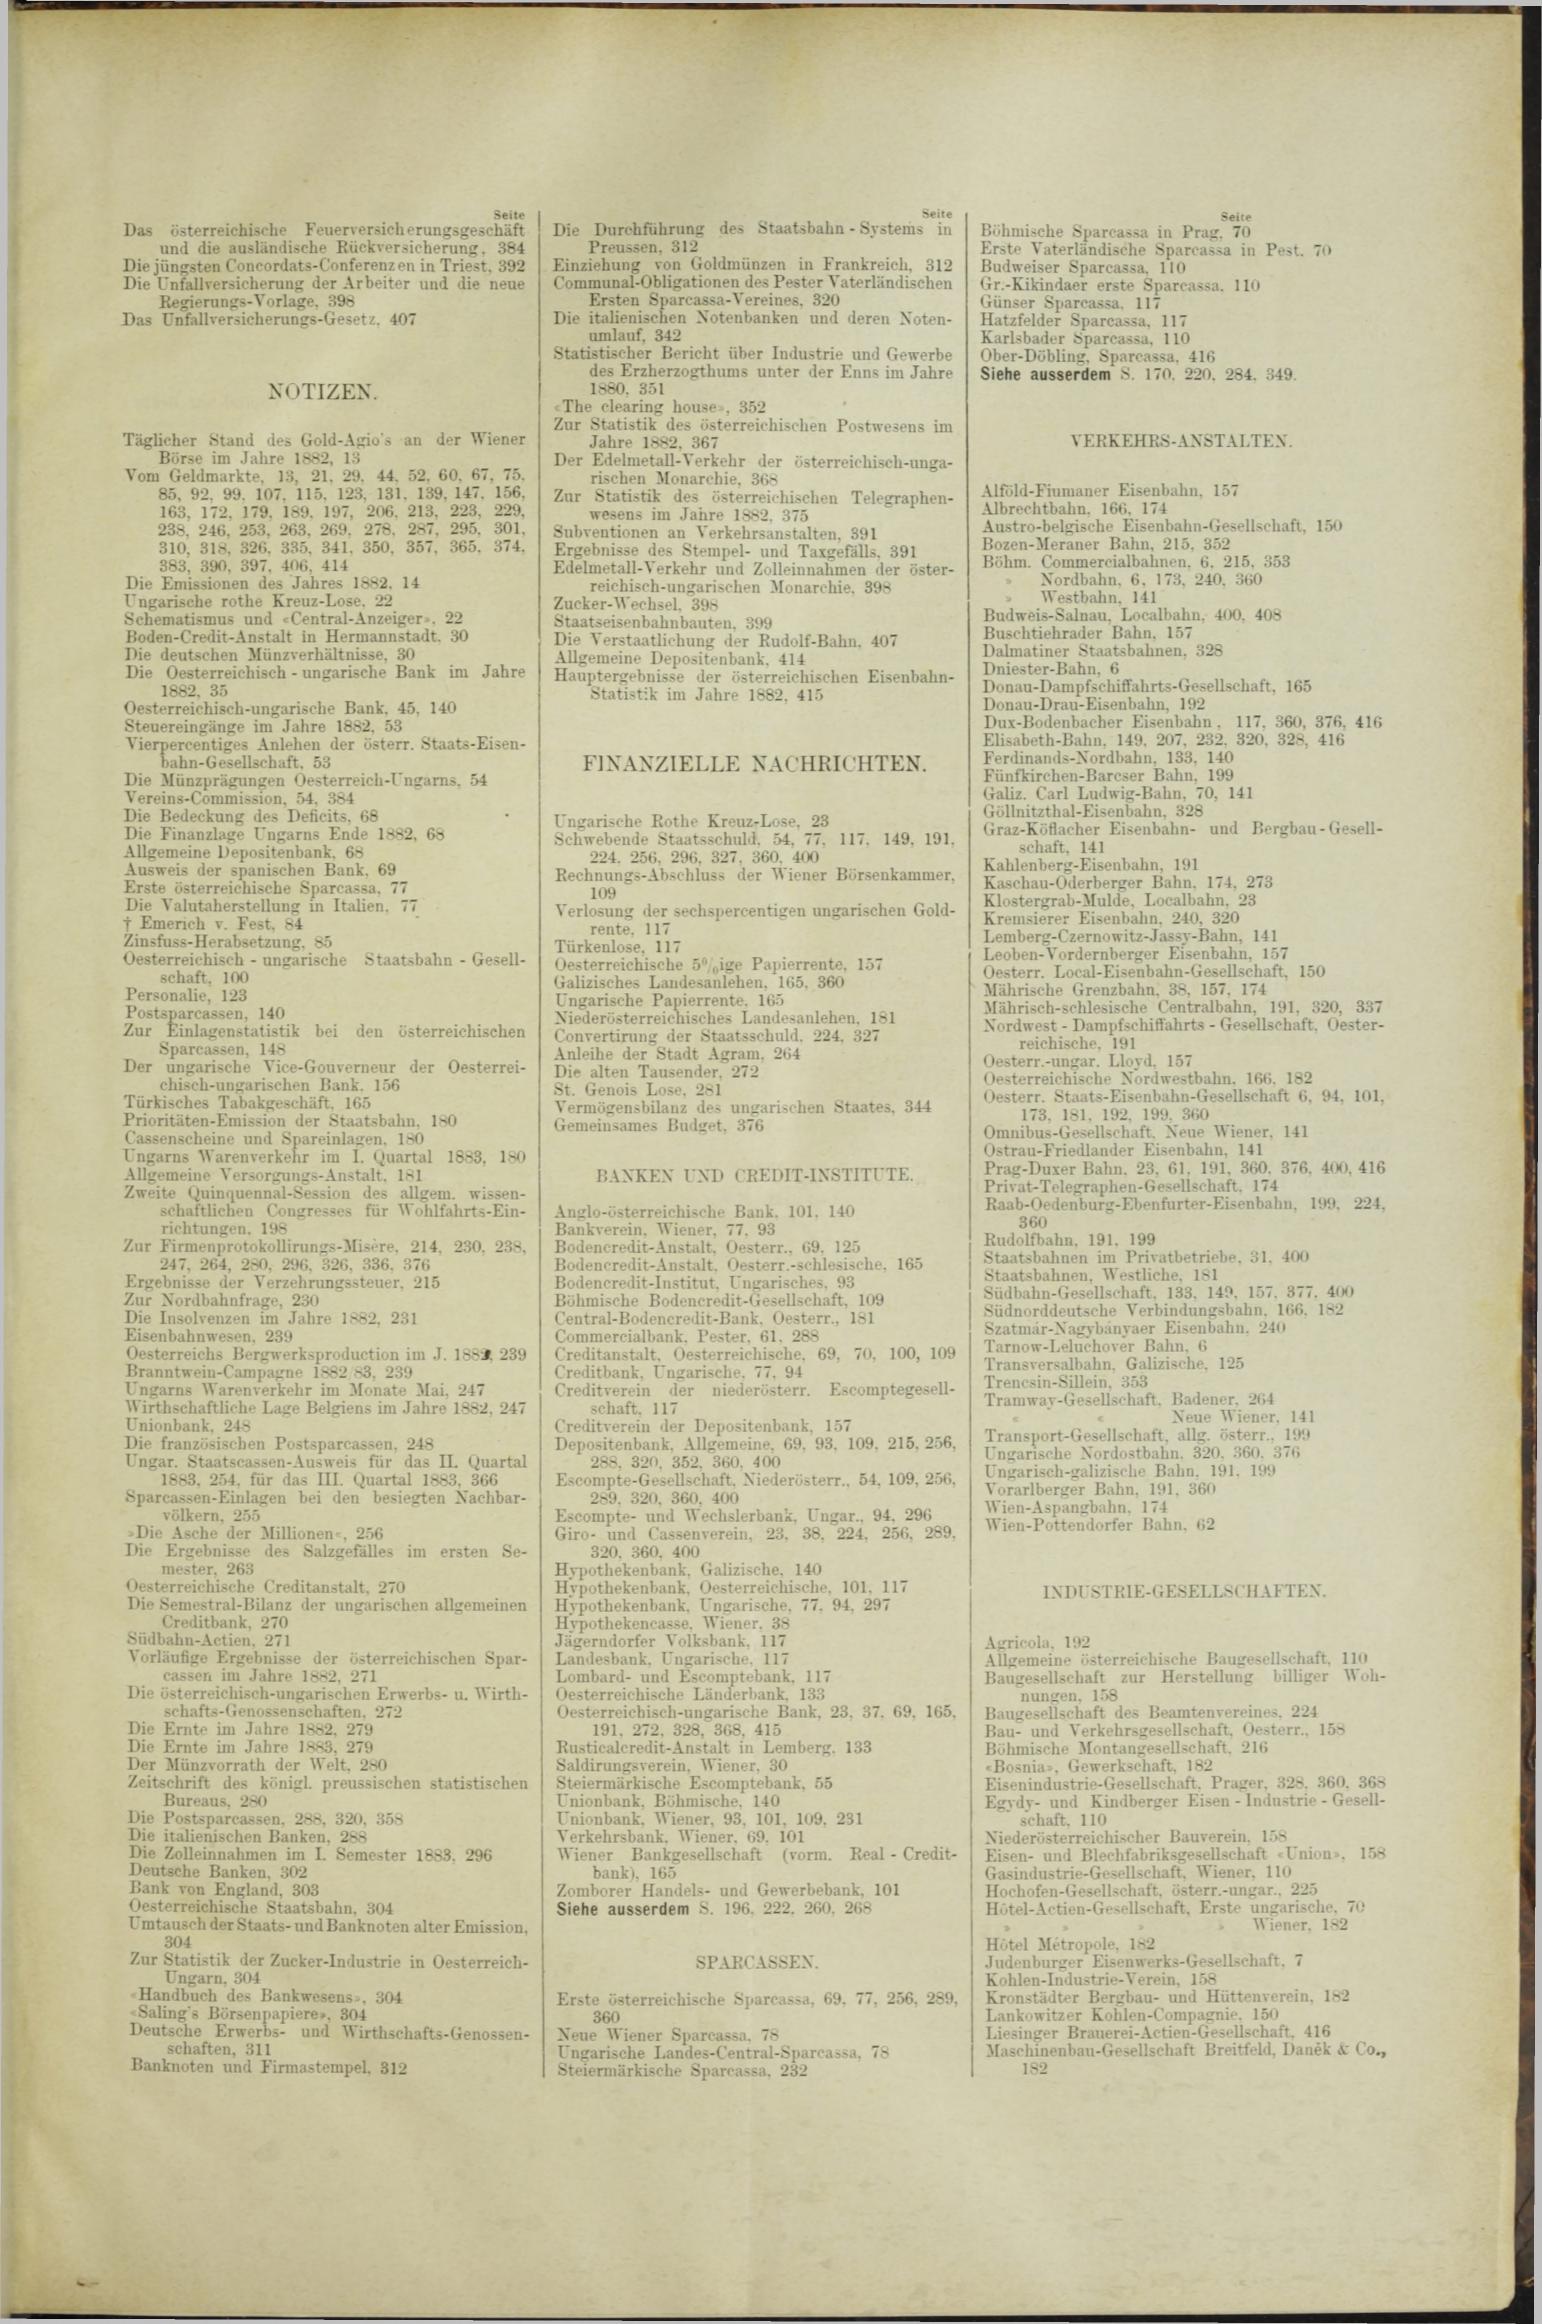 Der Tresor 15.11.1883 - Seite 11